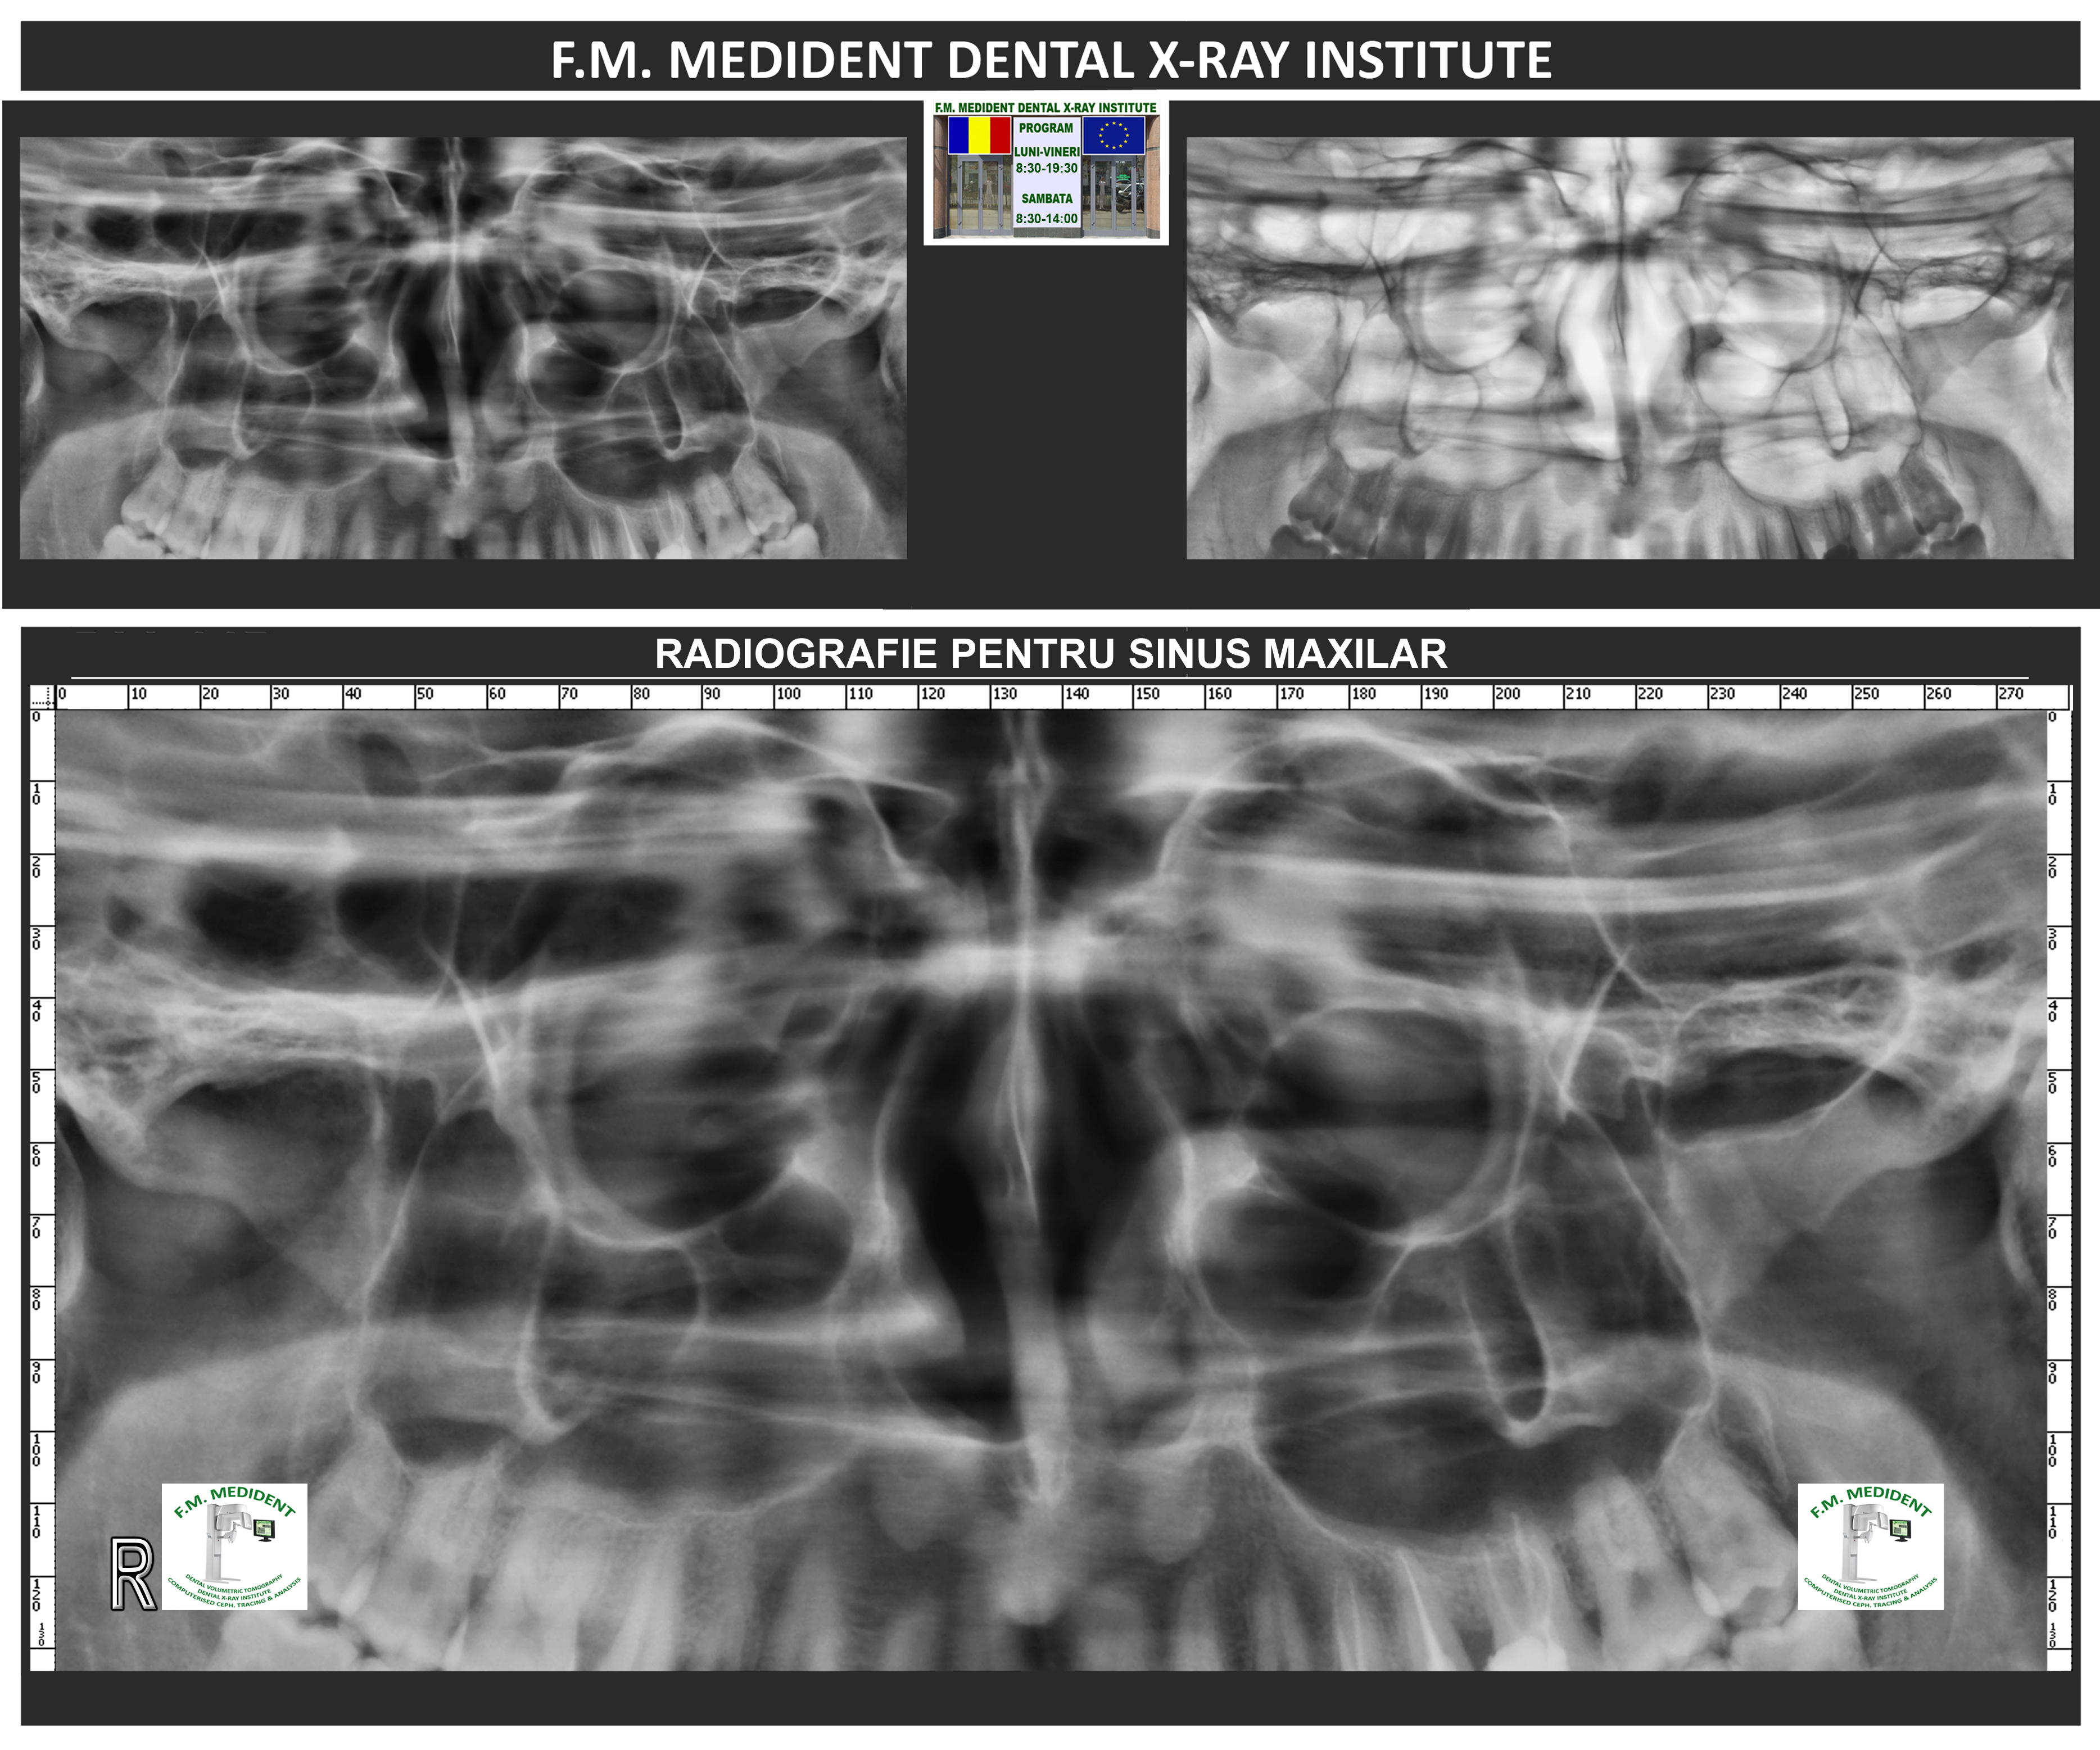 Radiografia de sinus maxilar